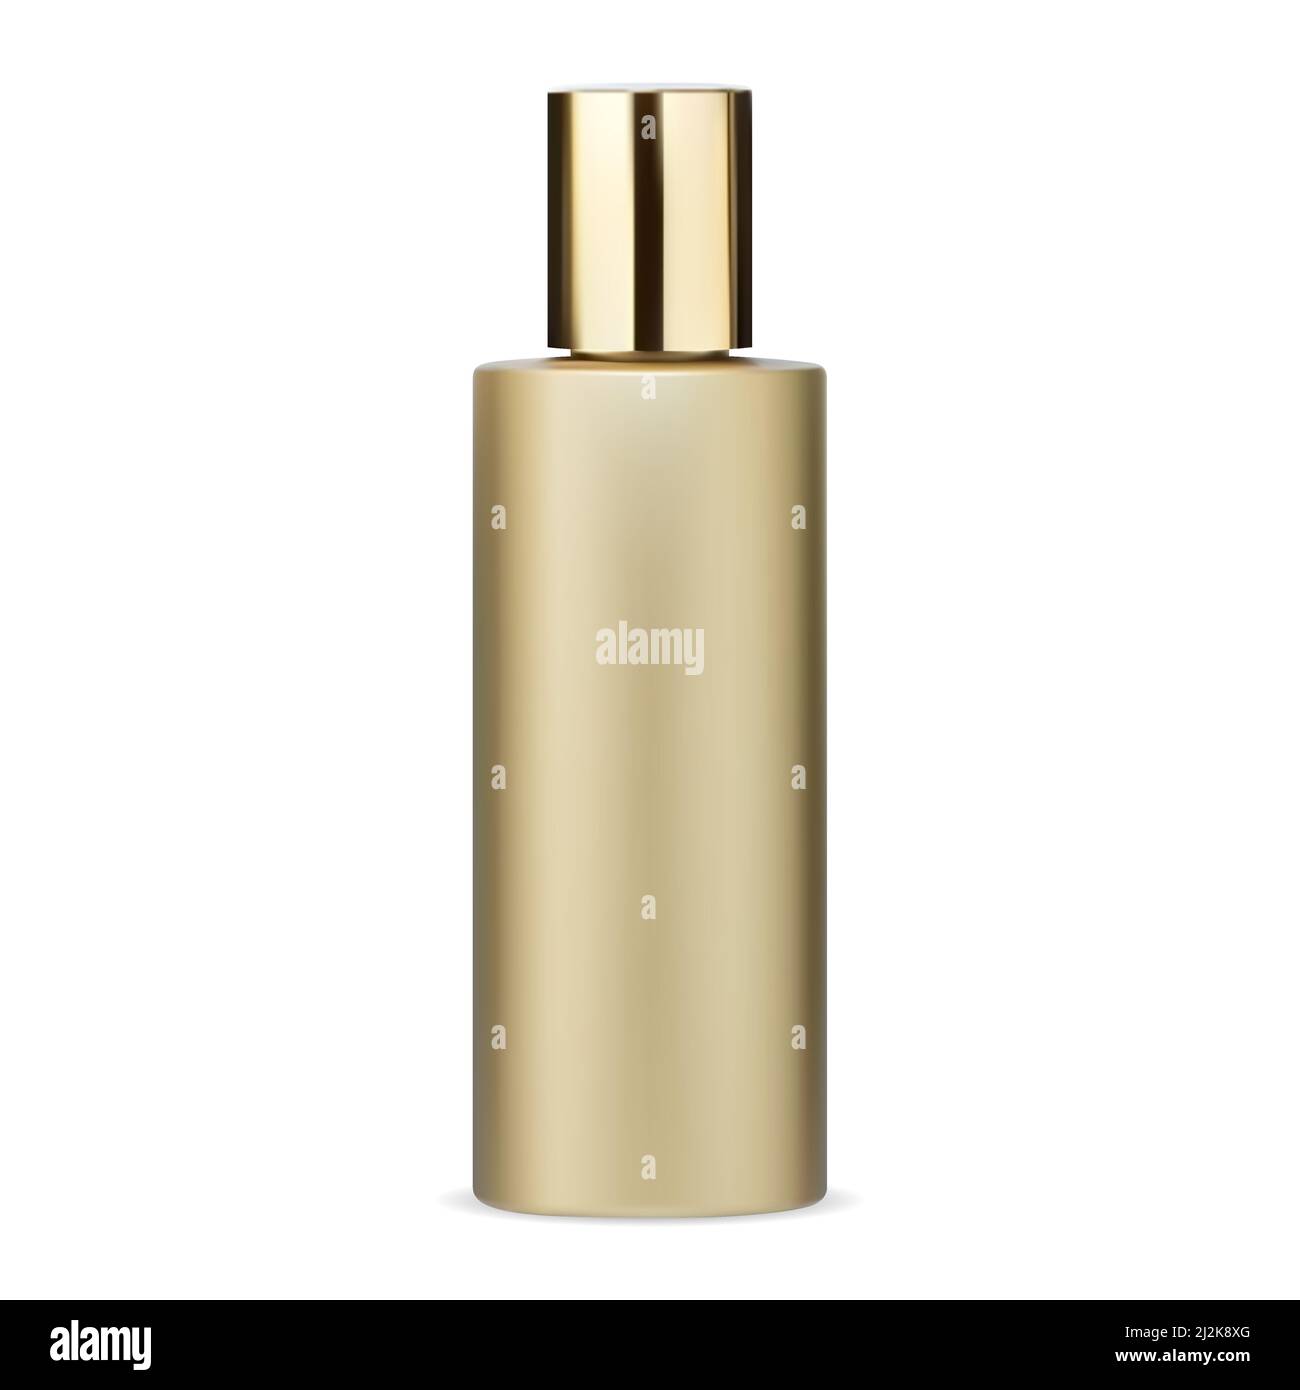 Shampoo-Flasche Mockup. Flasche Kosmetikbehälter, goldene Kunststoffverpackung für Badeprodukt. Haargel oder Körper Haut zylindrischen Schablone Design, loti Stock Vektor